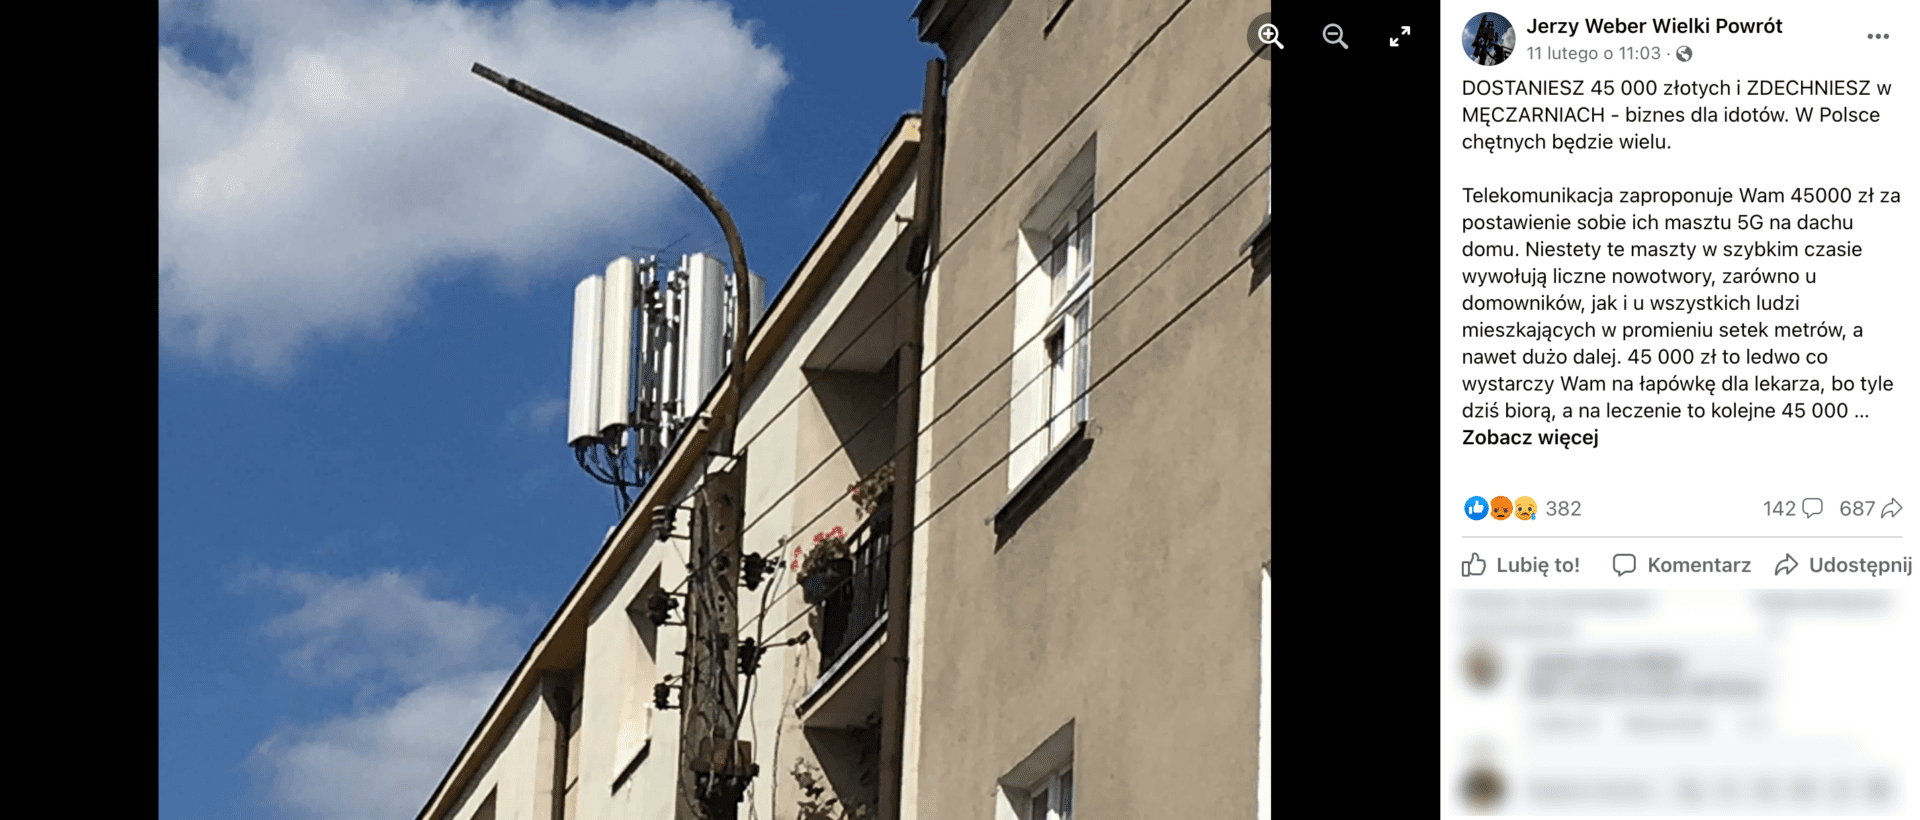 Zrzut ekranu opisywanego posta. Do wpisu dołączono zdjęcie instalacji telekomunikacyjnej na dachu budynku mieszkalnego.